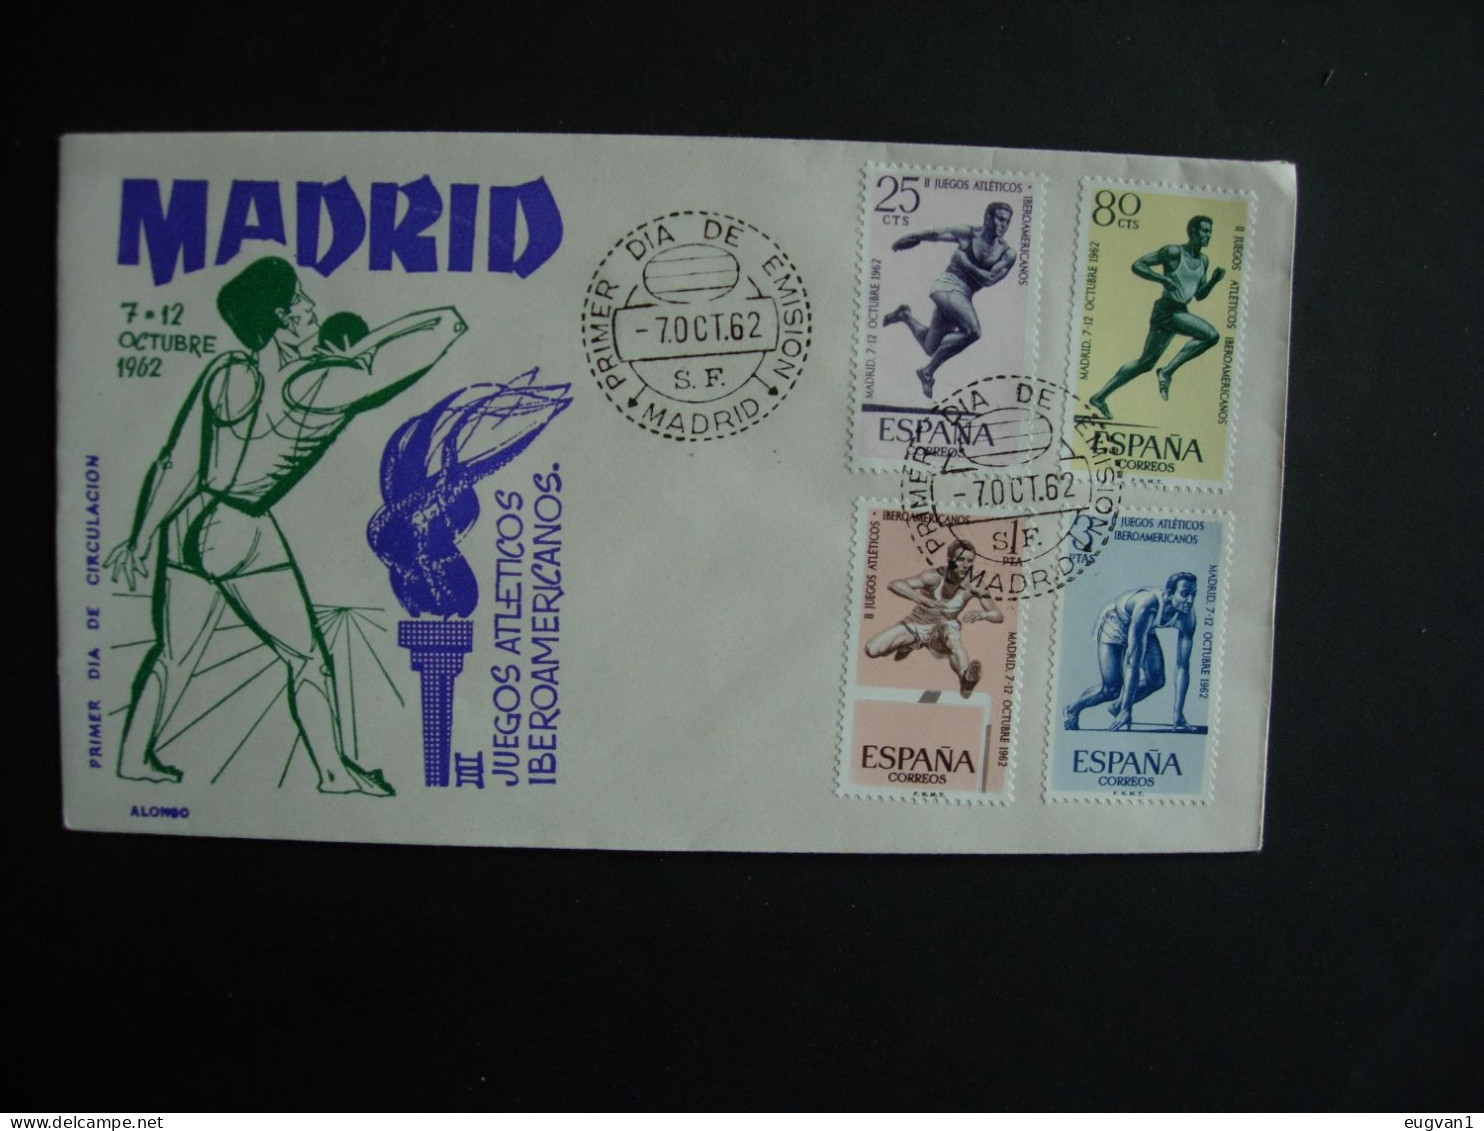 Espagne.1121/24. Jeux Athéltiques Libéroamér. Cachet 1er Jour 7.10.1962 - Athletics